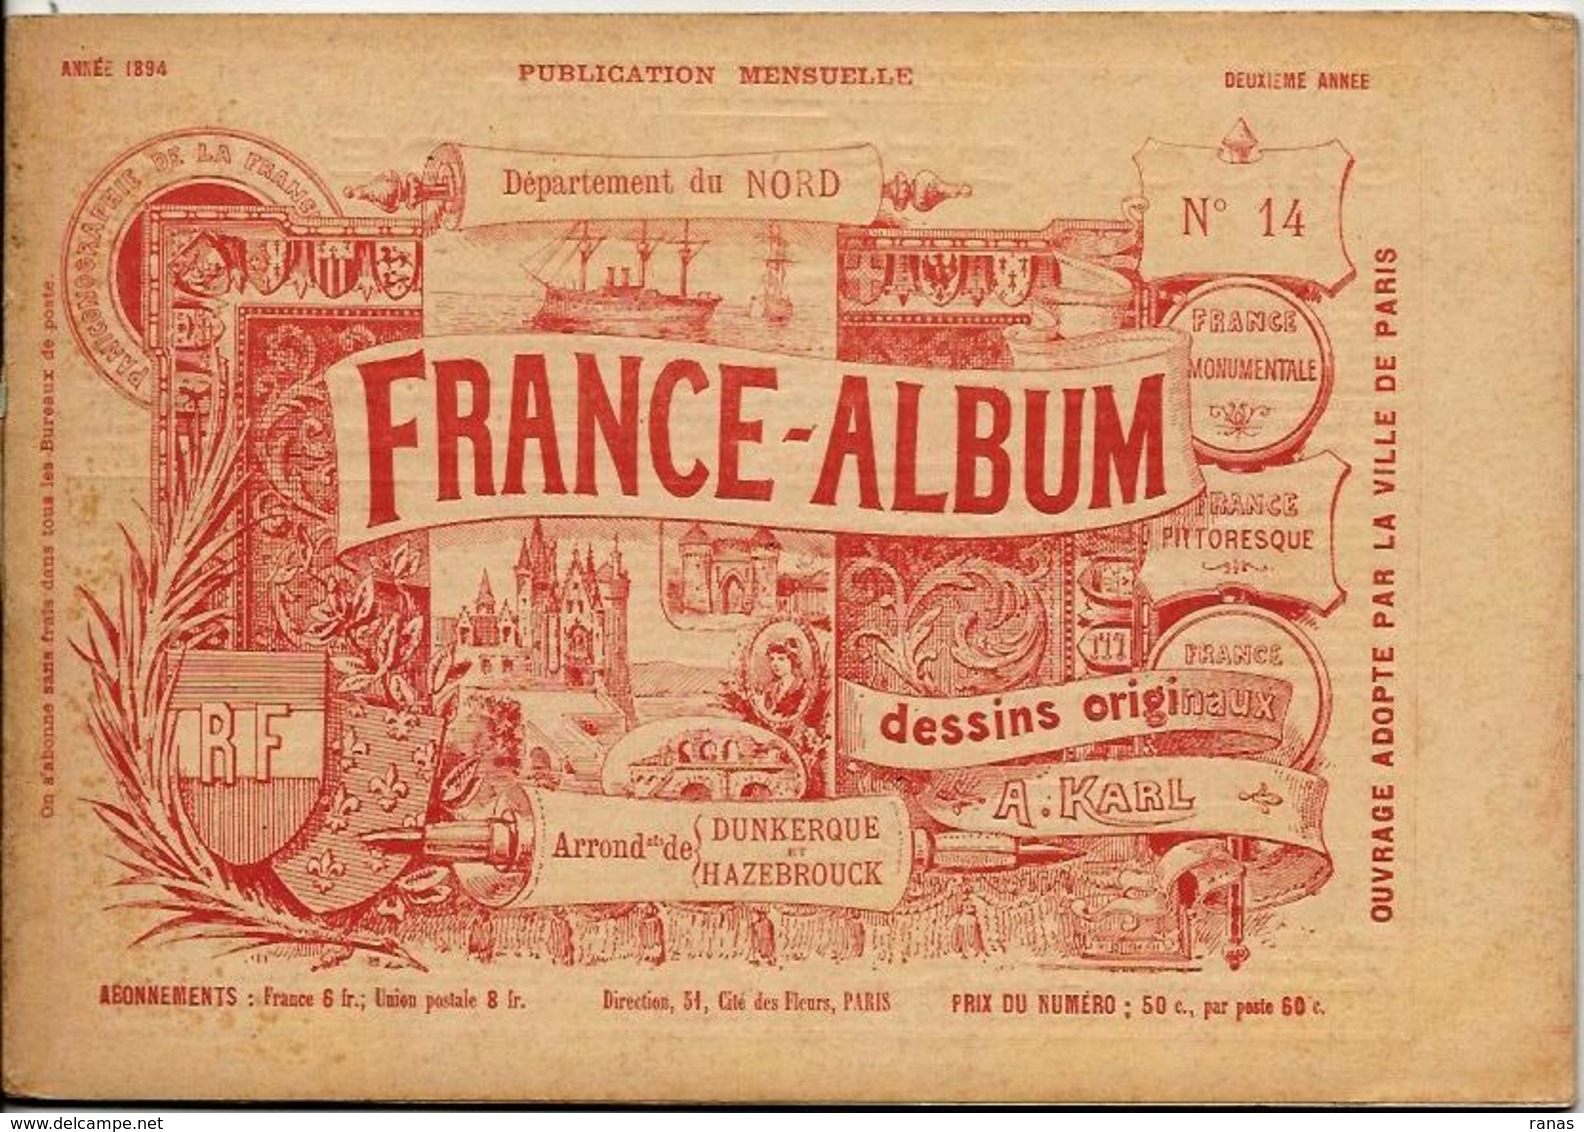 NORD 59 France Album De A. KARL, Carte Gravures Texte Publicités 1894 - Toeristische Brochures